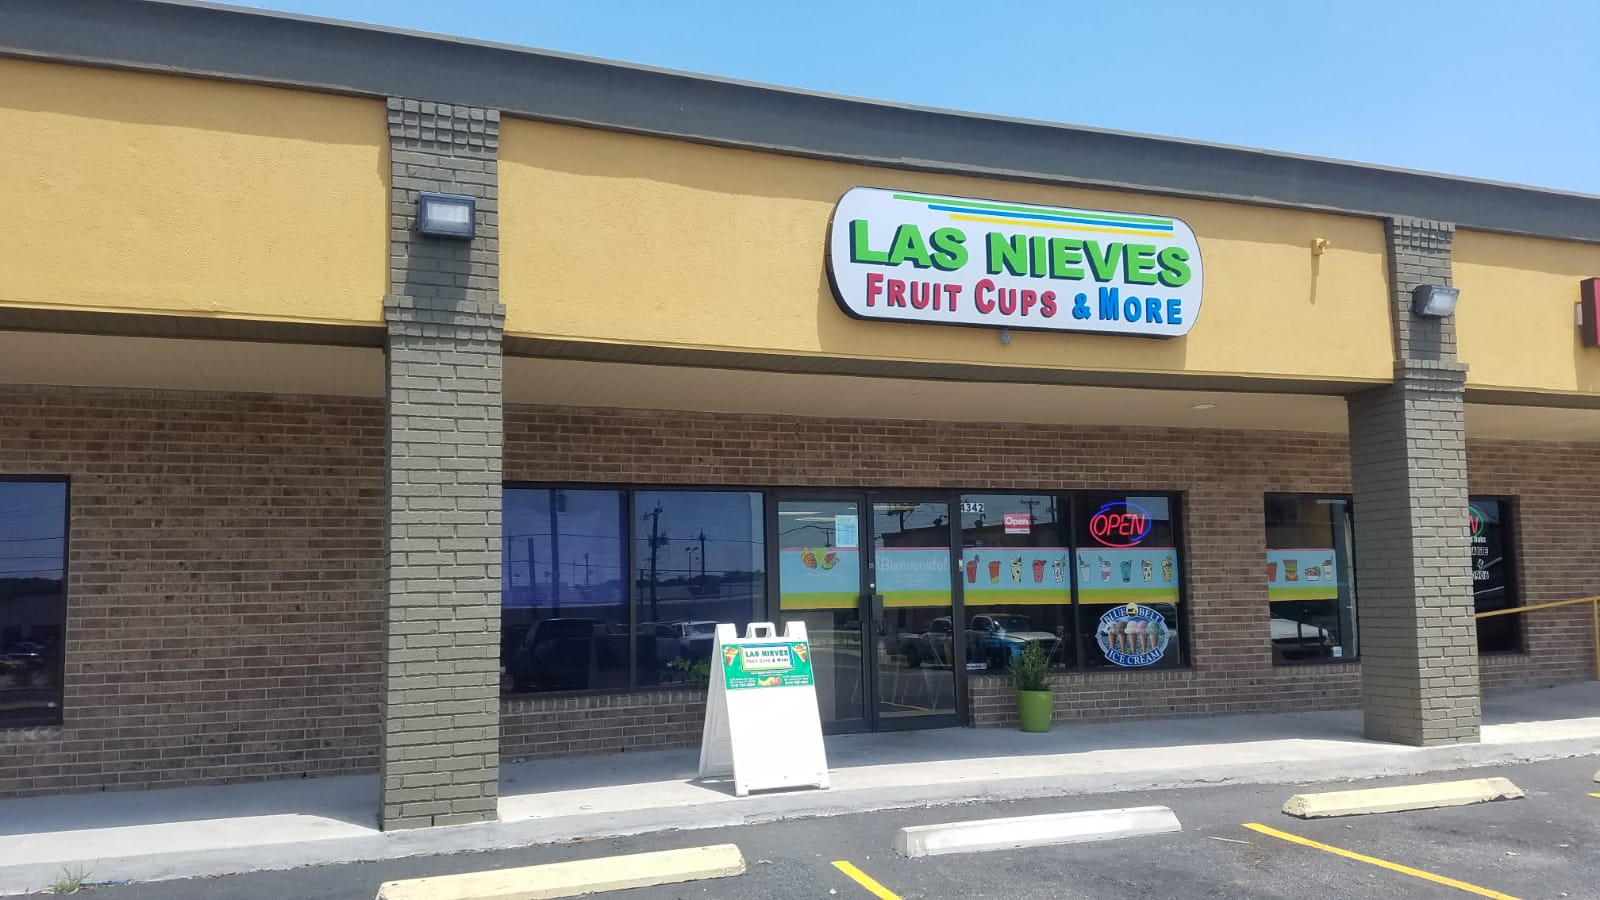 Las Nieves Fruit Cups & More